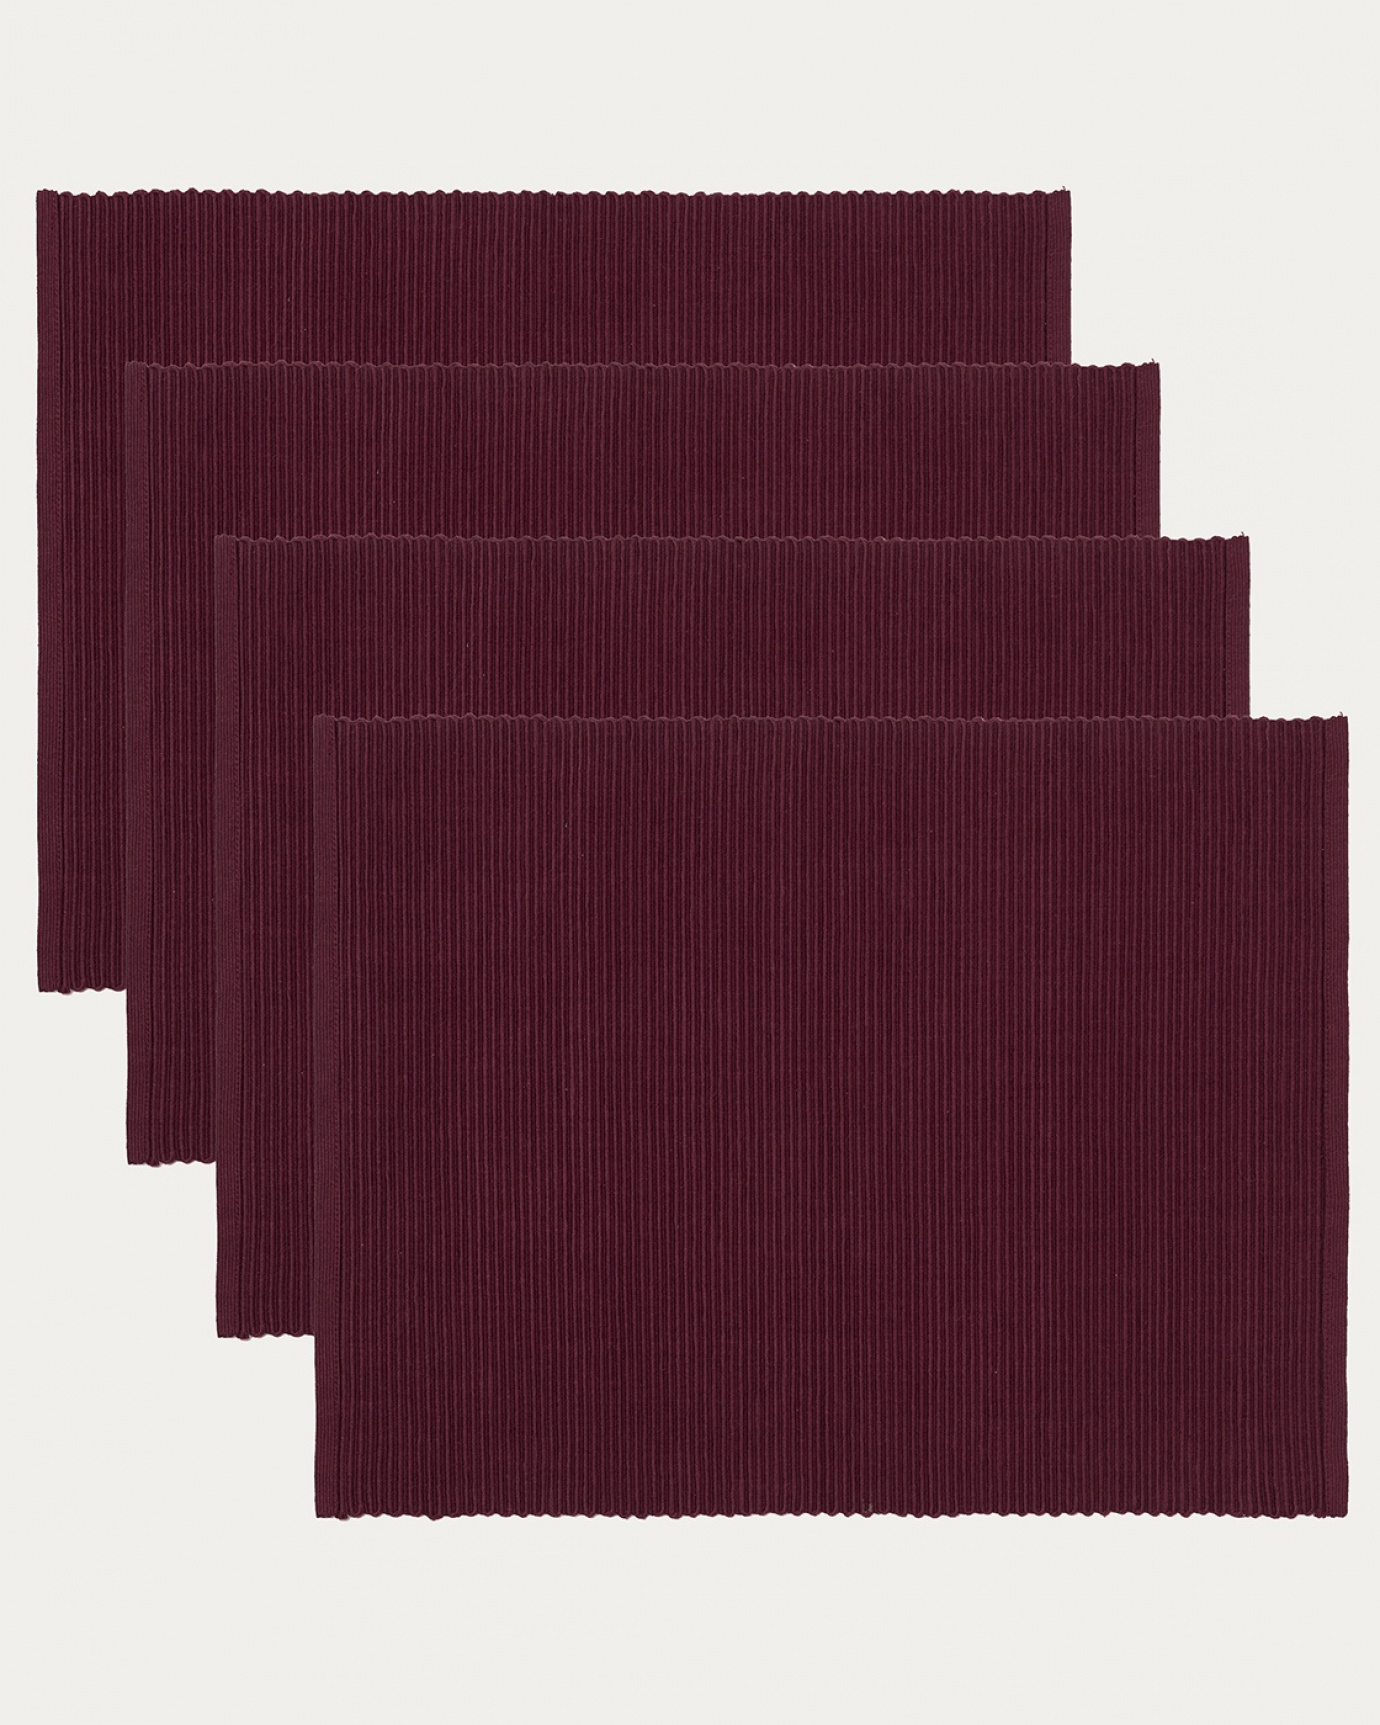 Produktbild burgundyröd UNI bordstablett av mjuk bomull i ribbad kvalité från LINUM DESIGN. Storlek 35x46 cm och säljs i 4-pack.